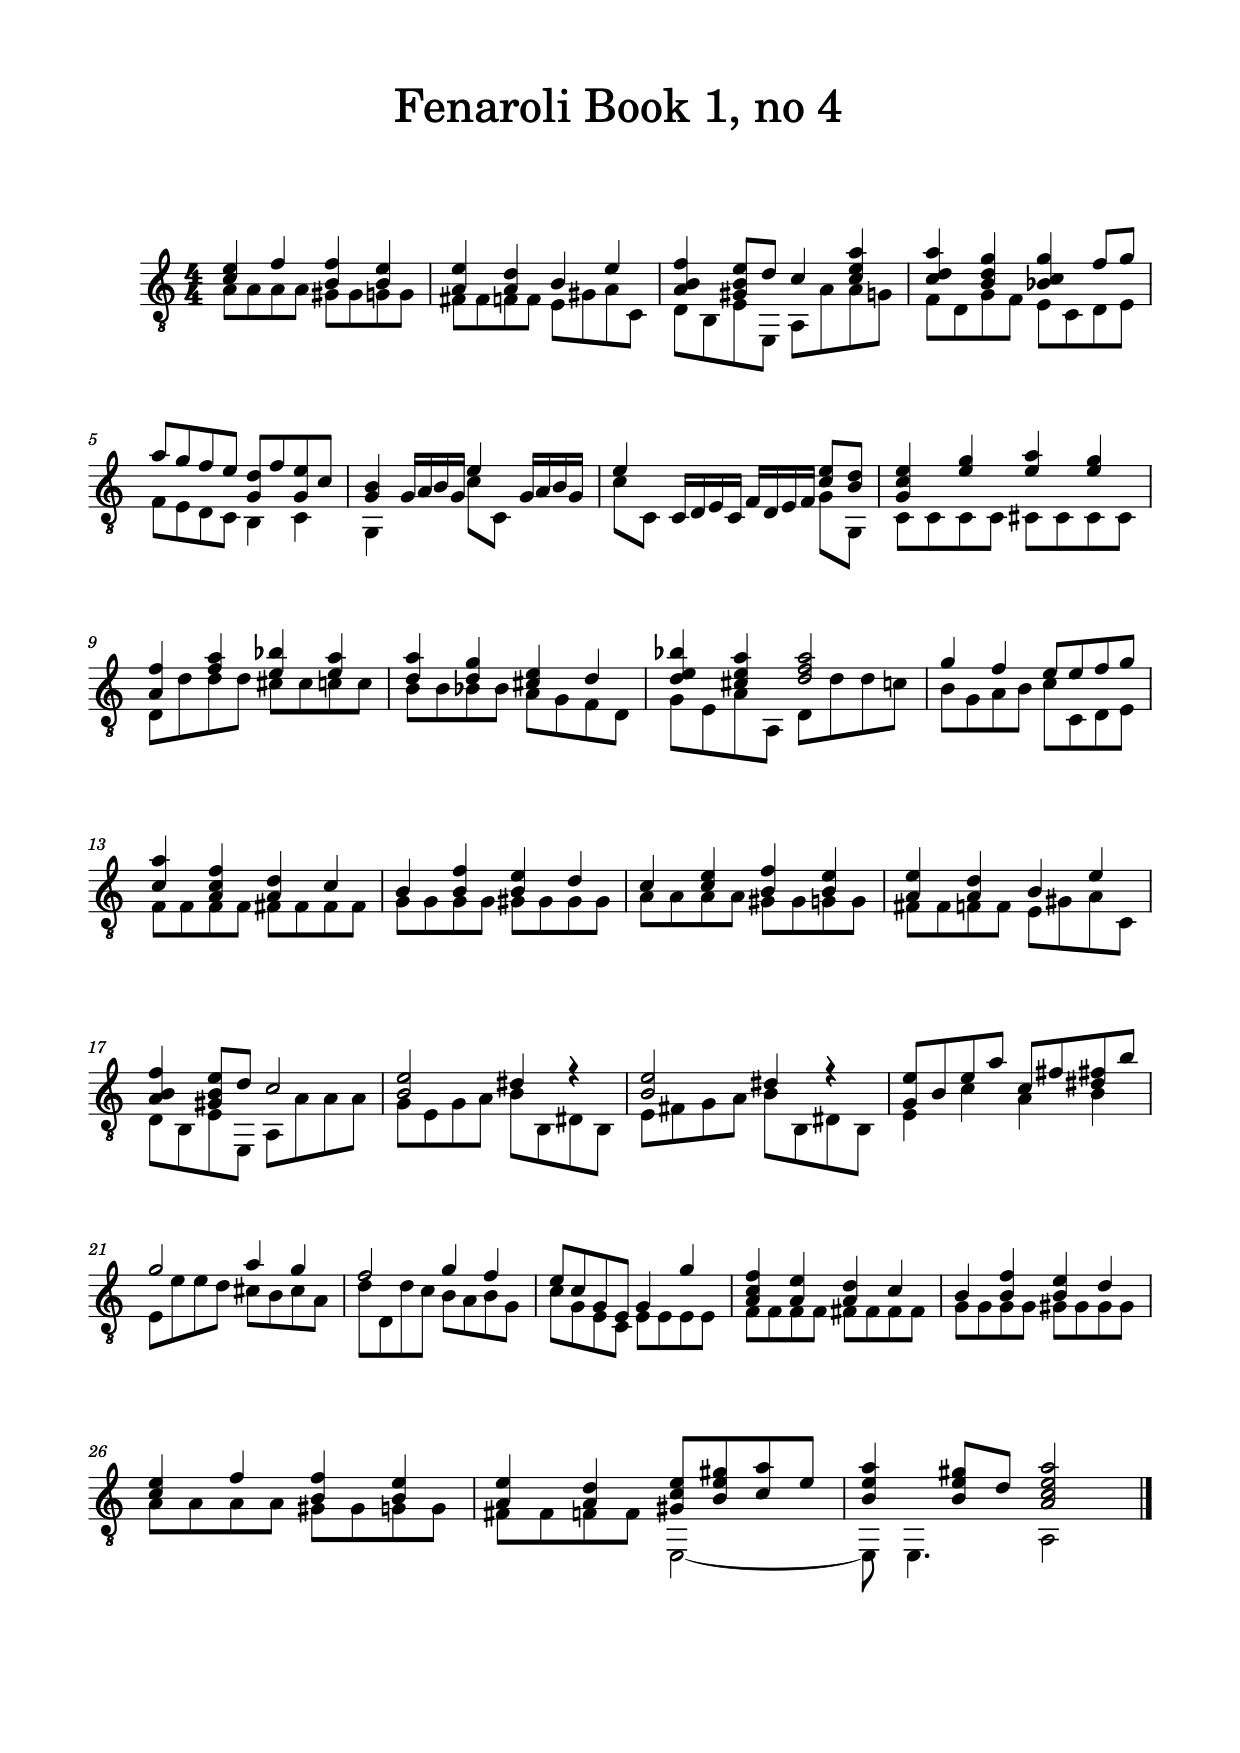 Classical &amp; Baroque Improvisation-fenaroli-4-no-text-png